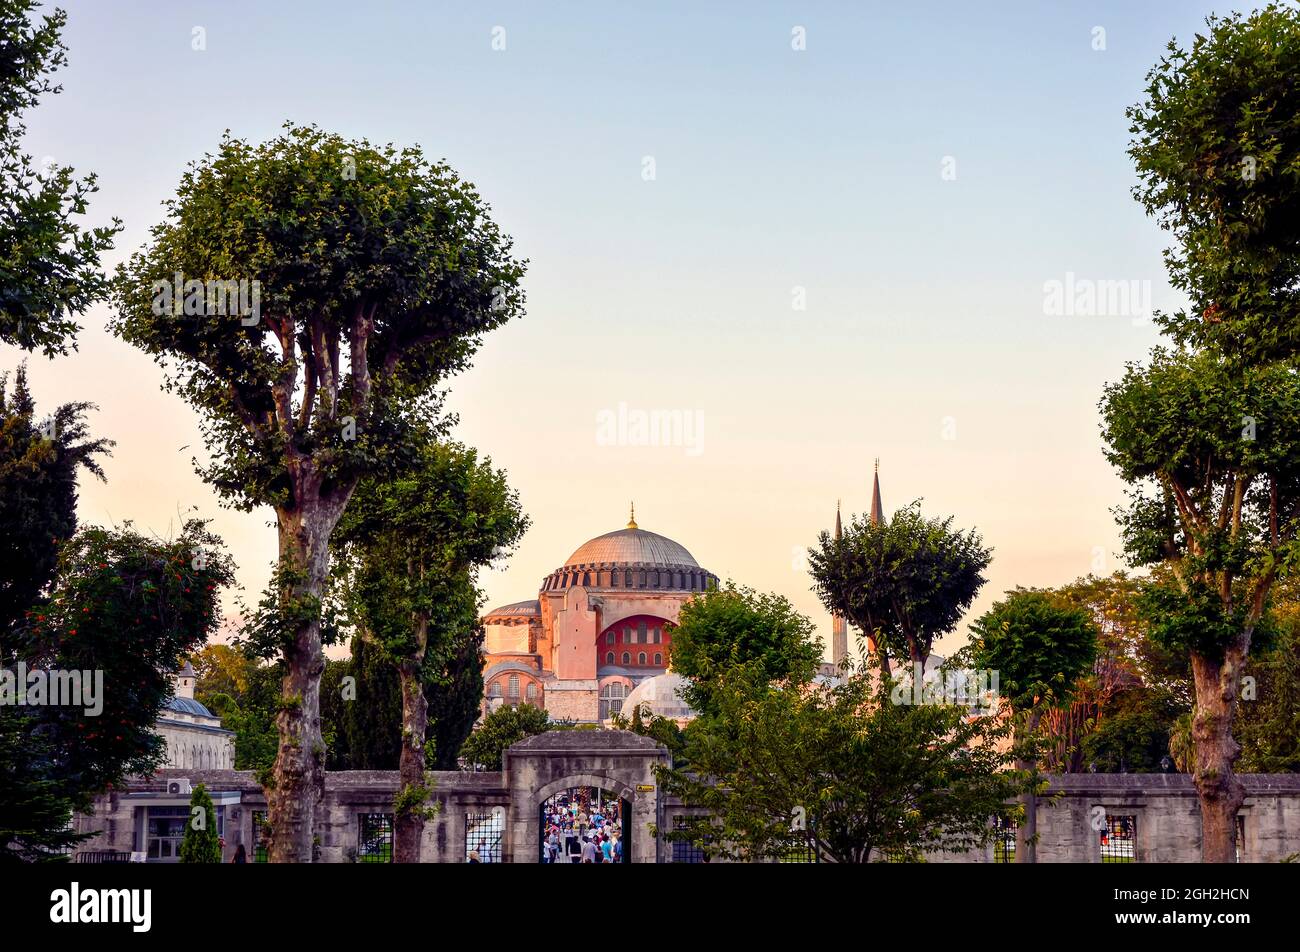 Außenansicht der Fassade und Eingang der Basilika Santa Sophia in Istanbul, Türkei am späten Nachmittag. Stockfoto